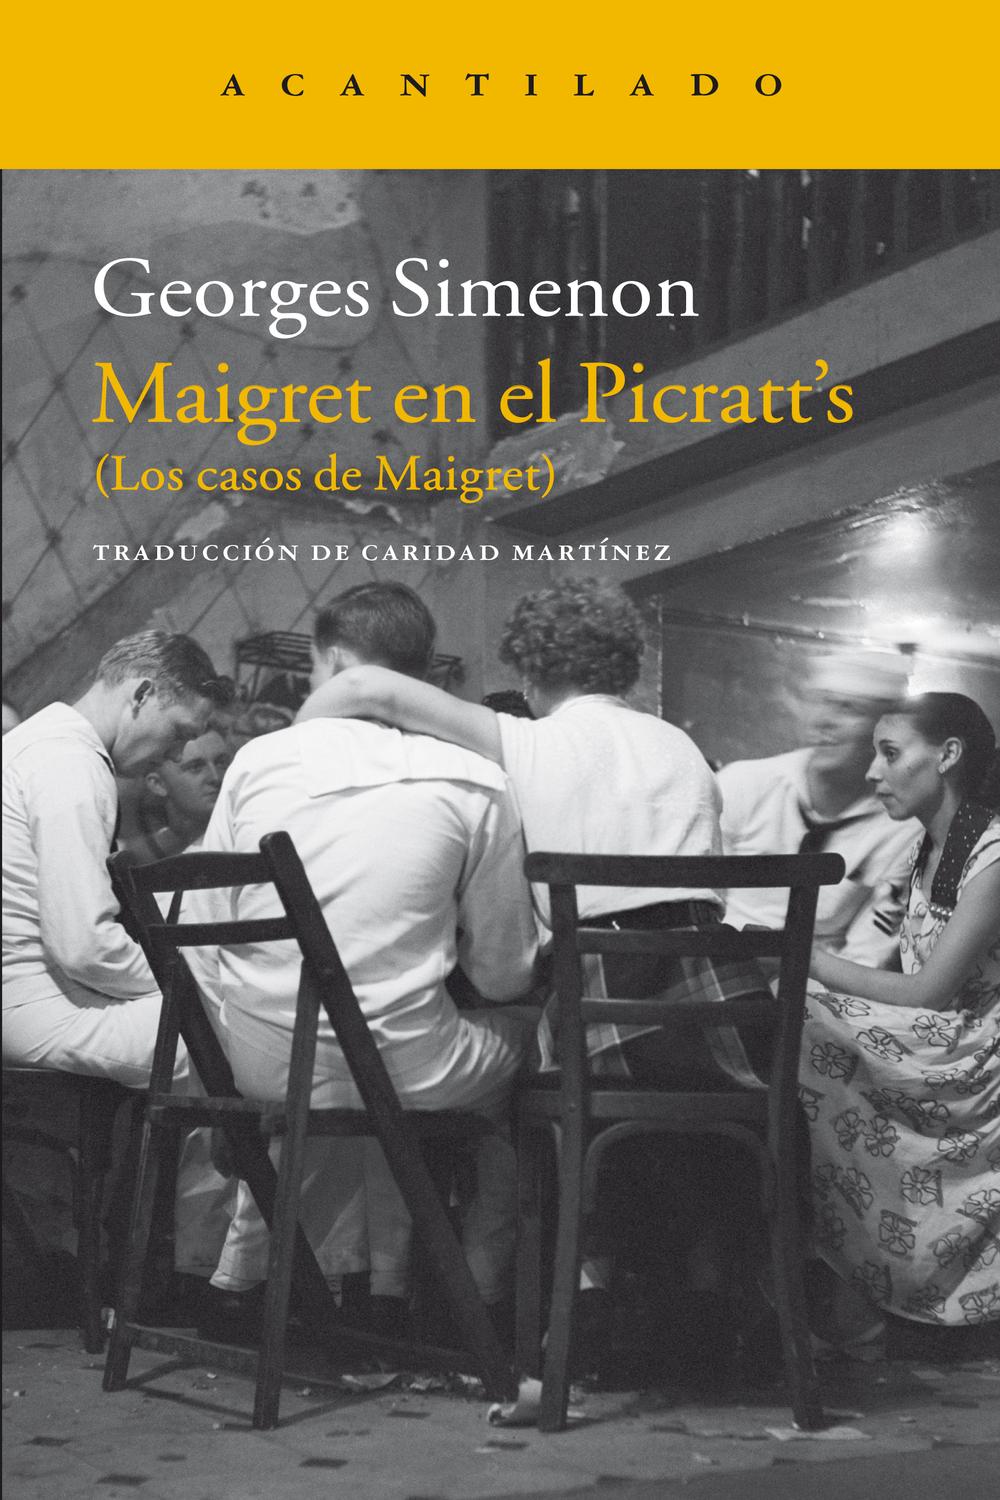 Maigret en el Picratt's - Georges Simenon, Caridad Martínez